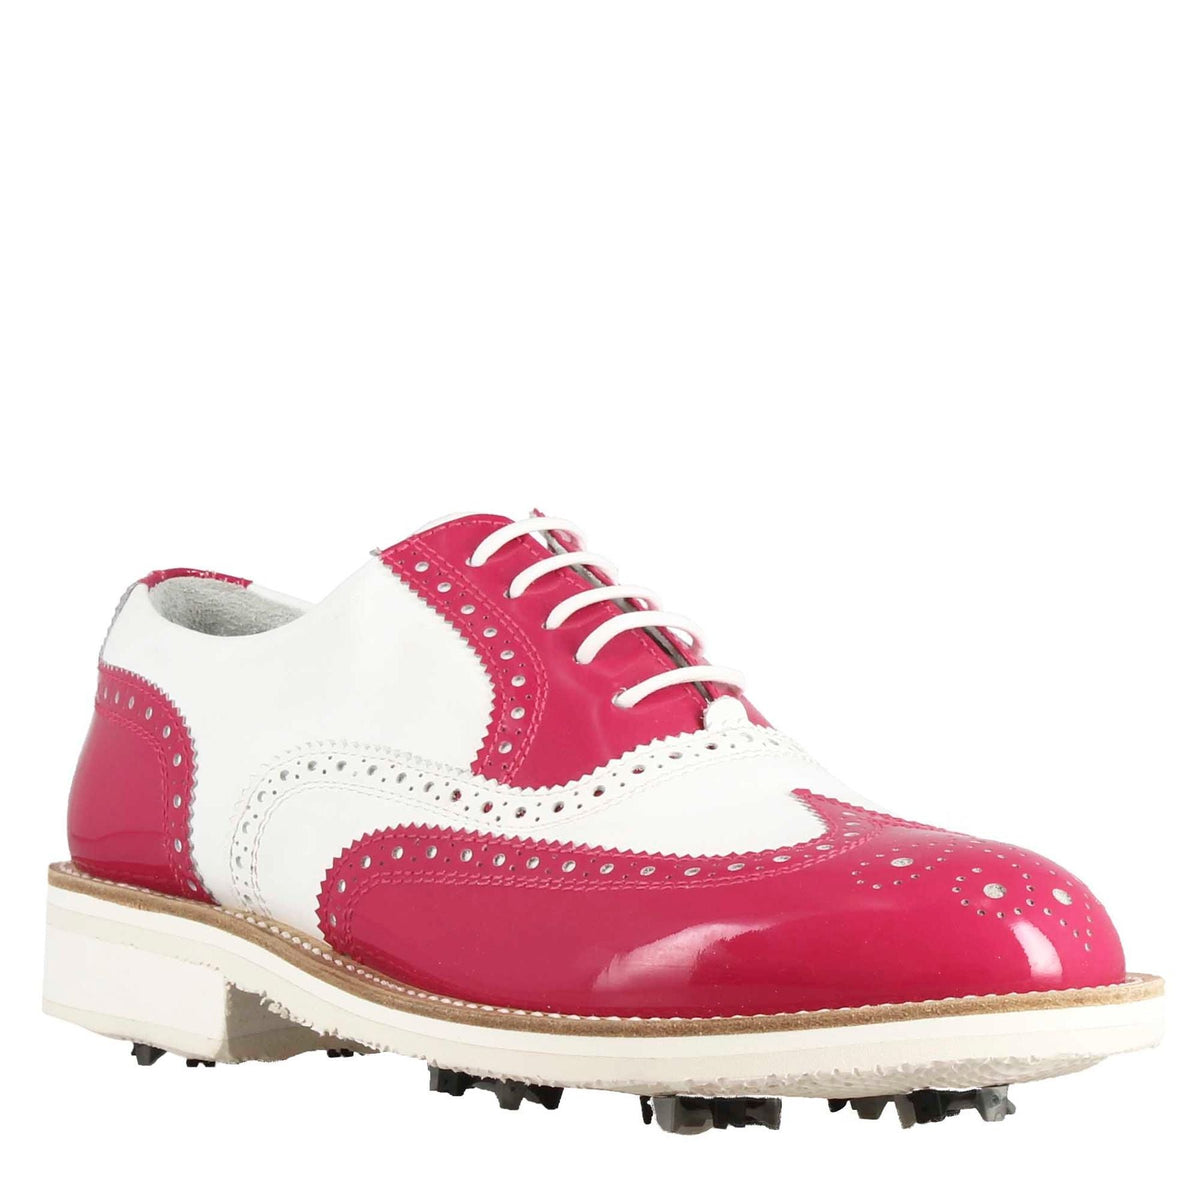 Scarpe golf da donna fatte a mano in pelle lucida colore bianco rosa.